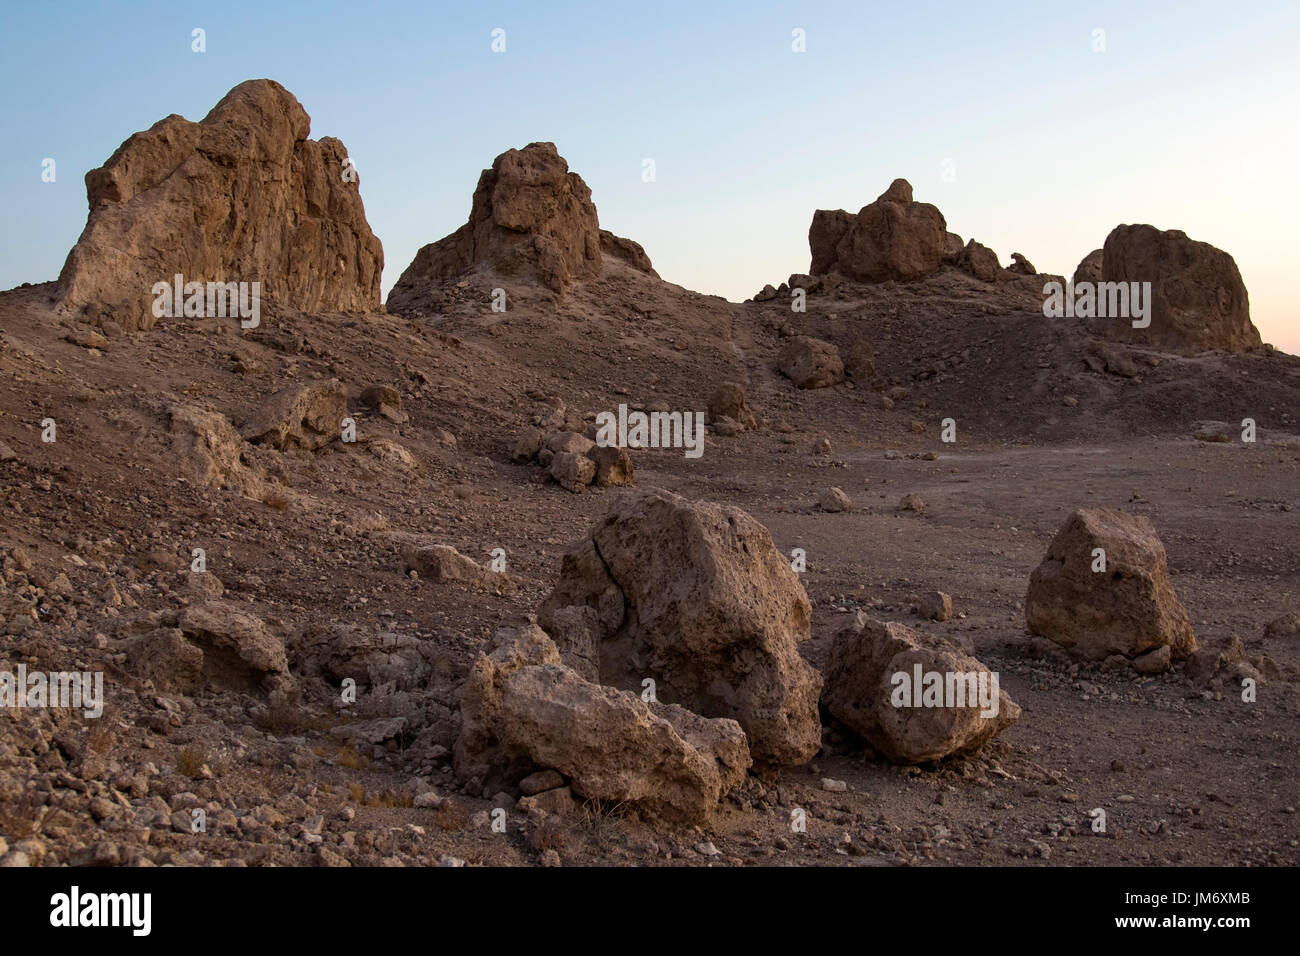 Paysage désertique à Trona Pinnacles dans le désert californien Banque D'Images